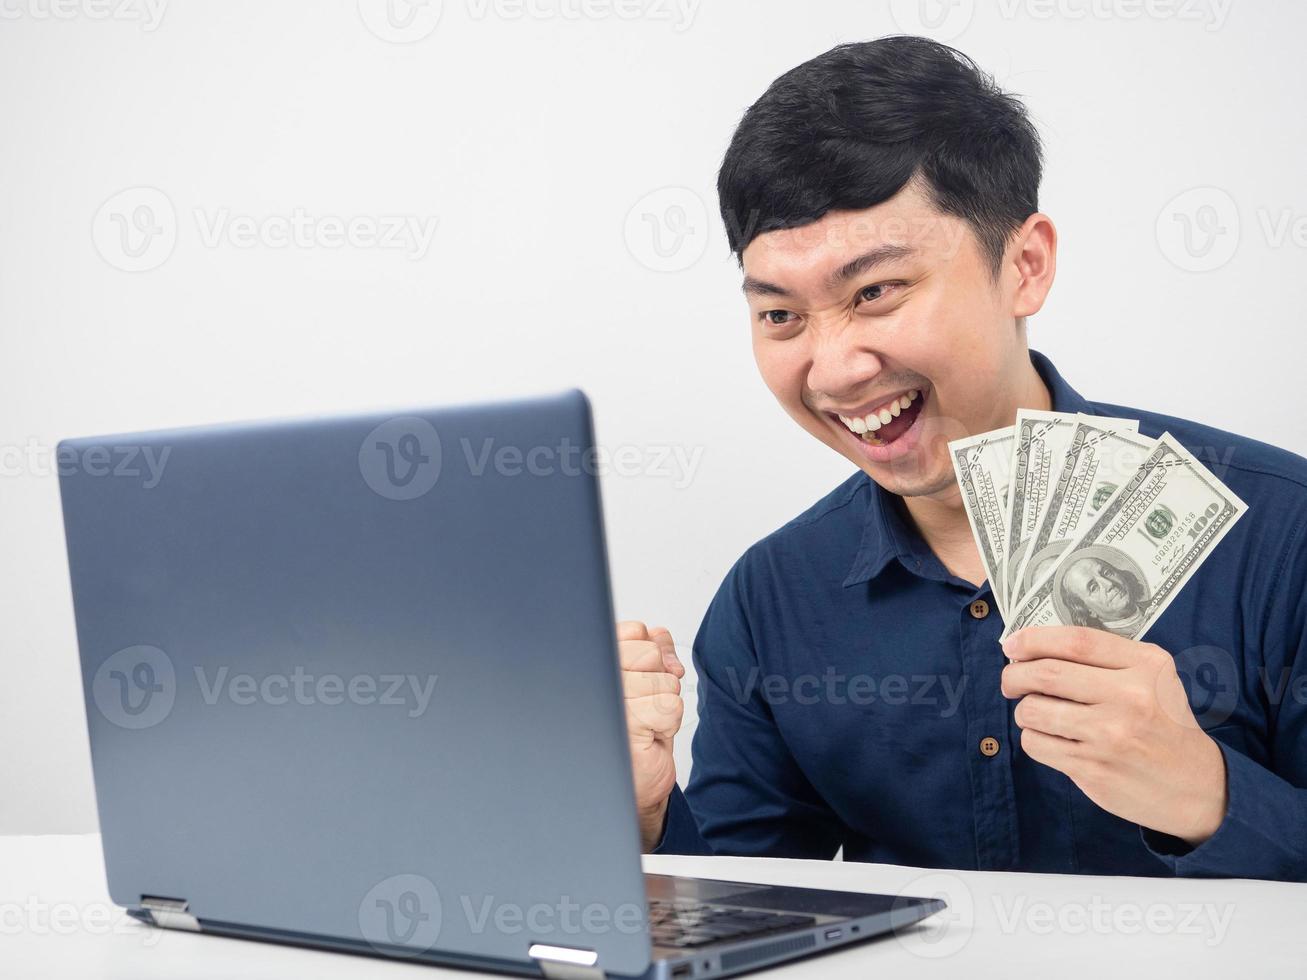 homme assis et regardant un ordinateur portable émotion heureuse avec gagner de l'argent photo